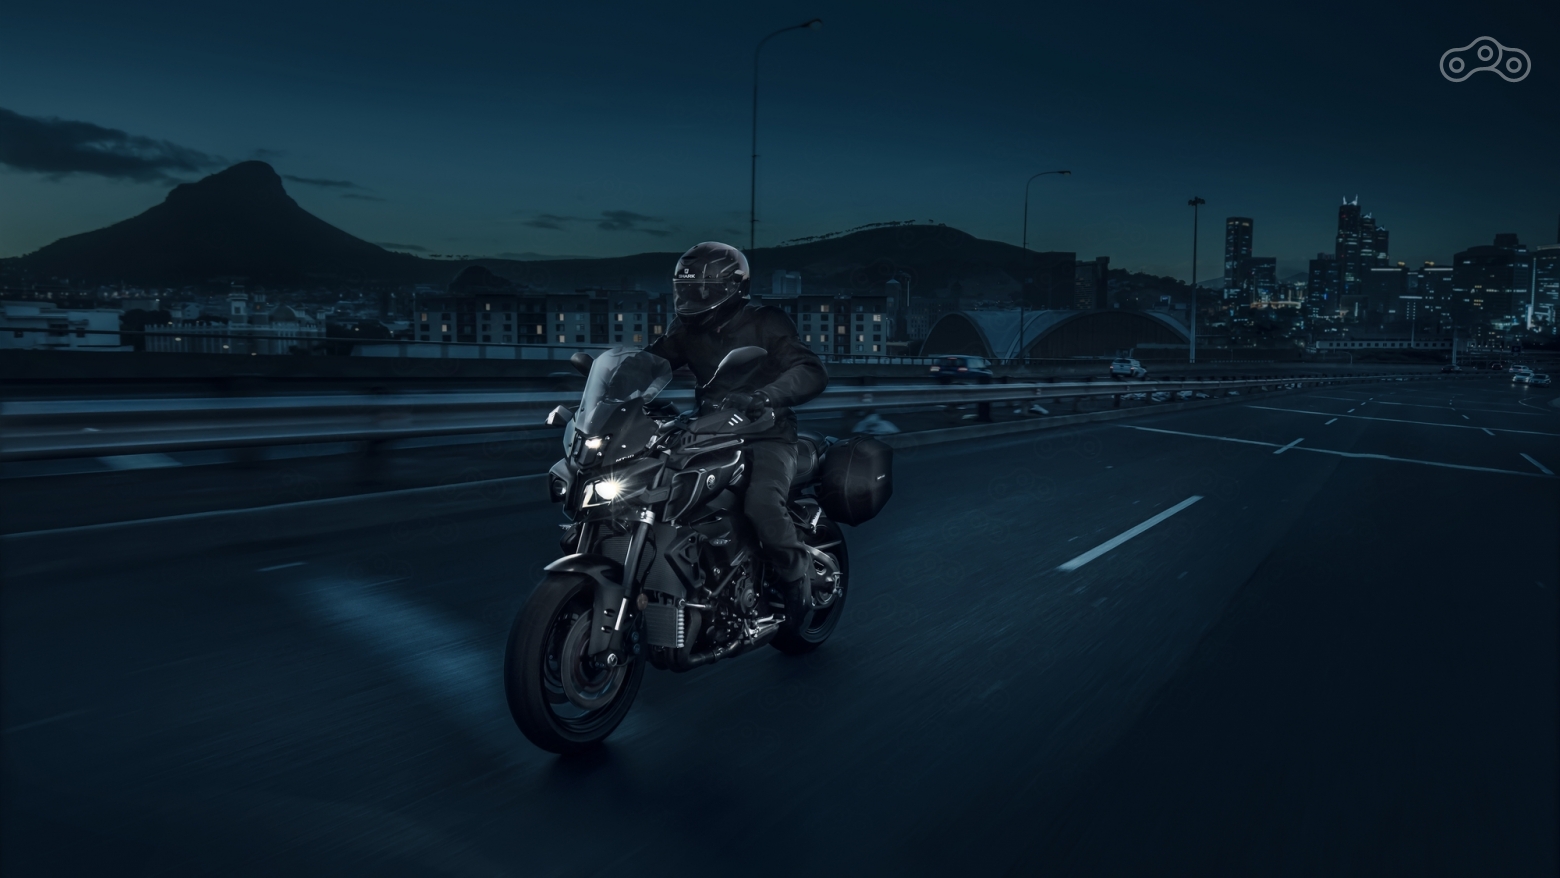 Мотоцикл Yamaha MT-10 Touring Edition 2017, версия для путешествий